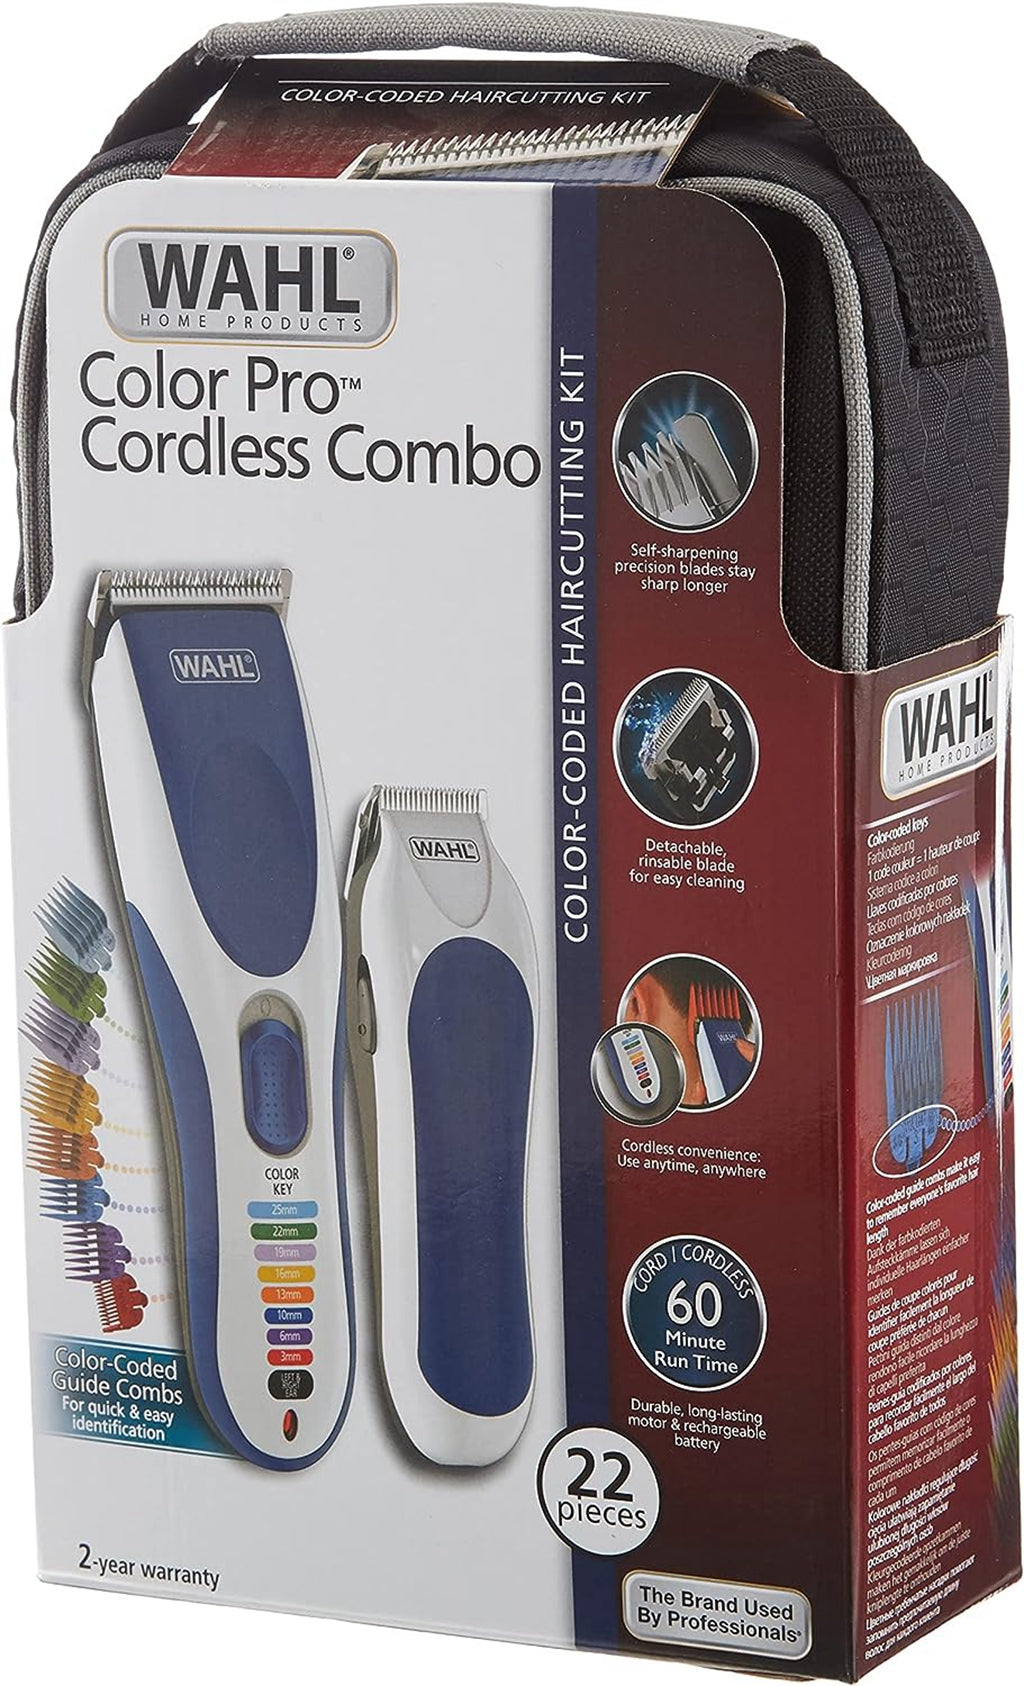 WAHL Color Pro Cordless cortadora eléctrica, con batería recargable, sin cable, 8 peines guía de colores fáciles de usar, óptima para toda la familia y para el cabello de los niños, cuchilla lavable